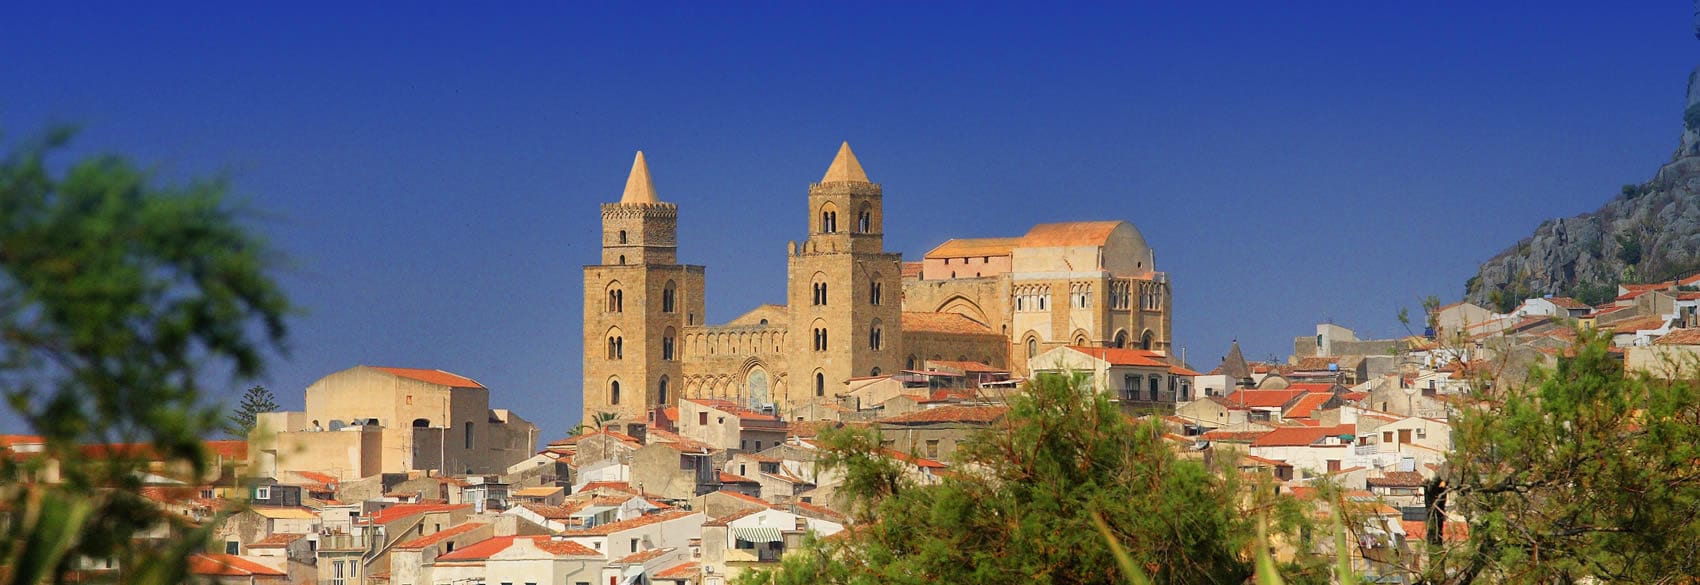 Palermo, Monreale e Cefalù: prese in esame dall’Unesco